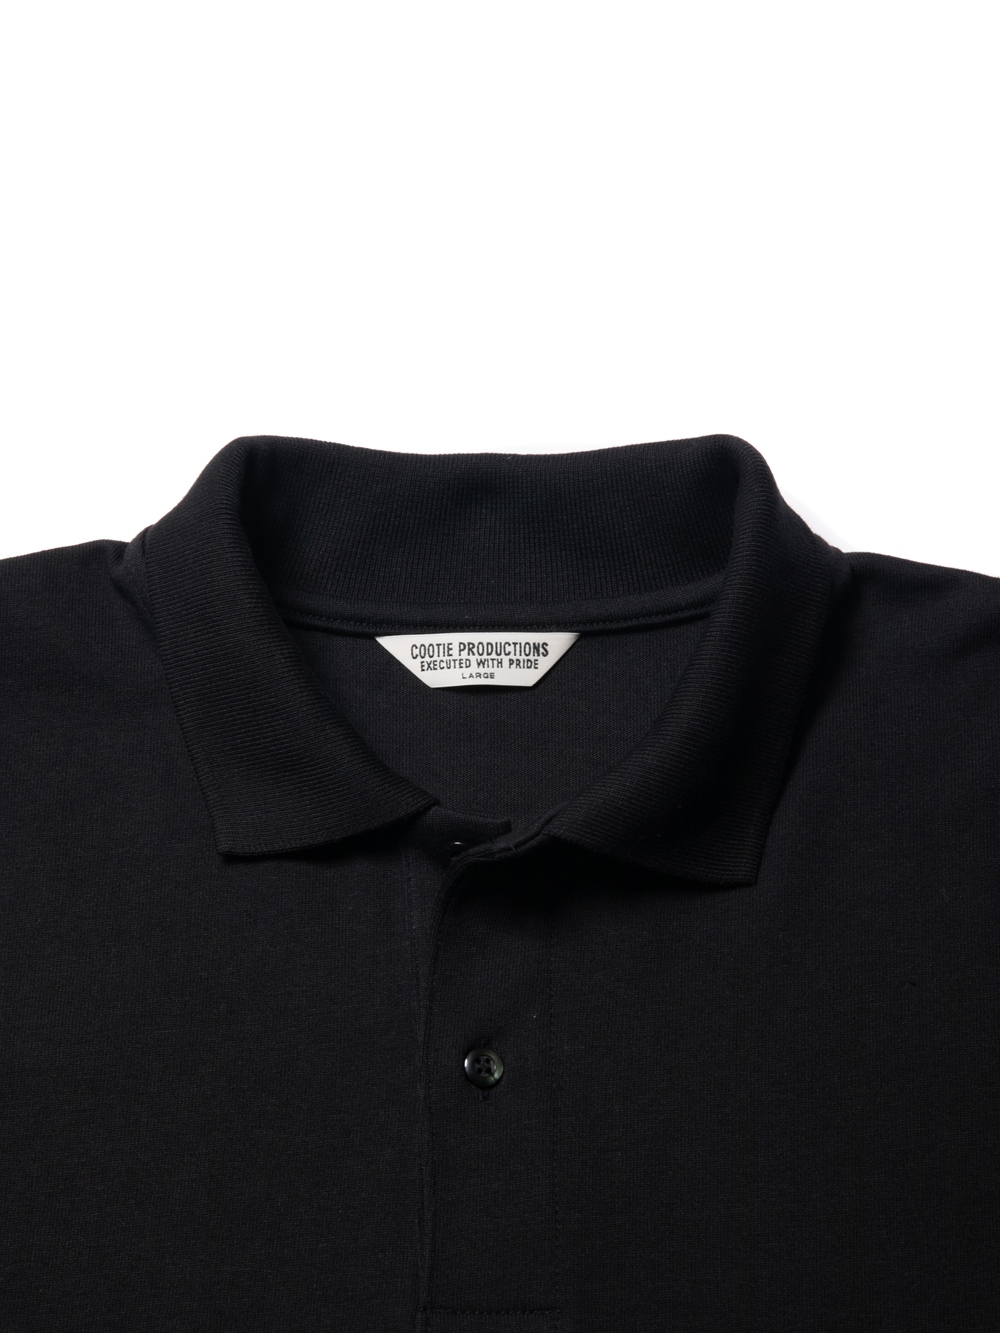 優れた品質 ポロシャツ 2022 production cootie - Tシャツ/カットソー 